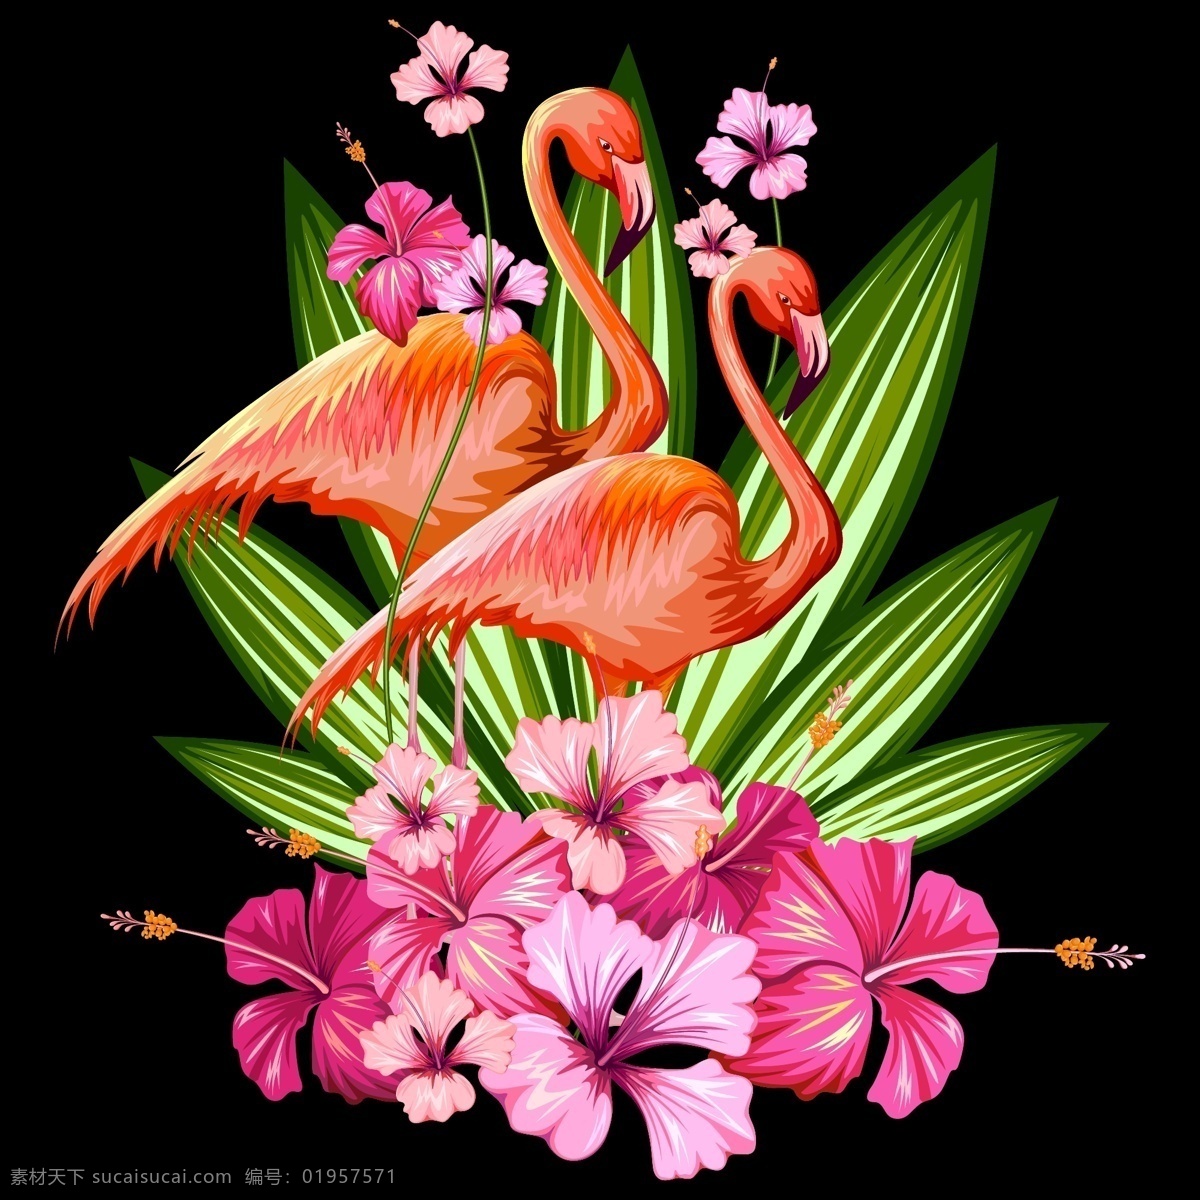 艳丽 花朵 仙鹤 插画 植物 热带 叶子 动物 花卉